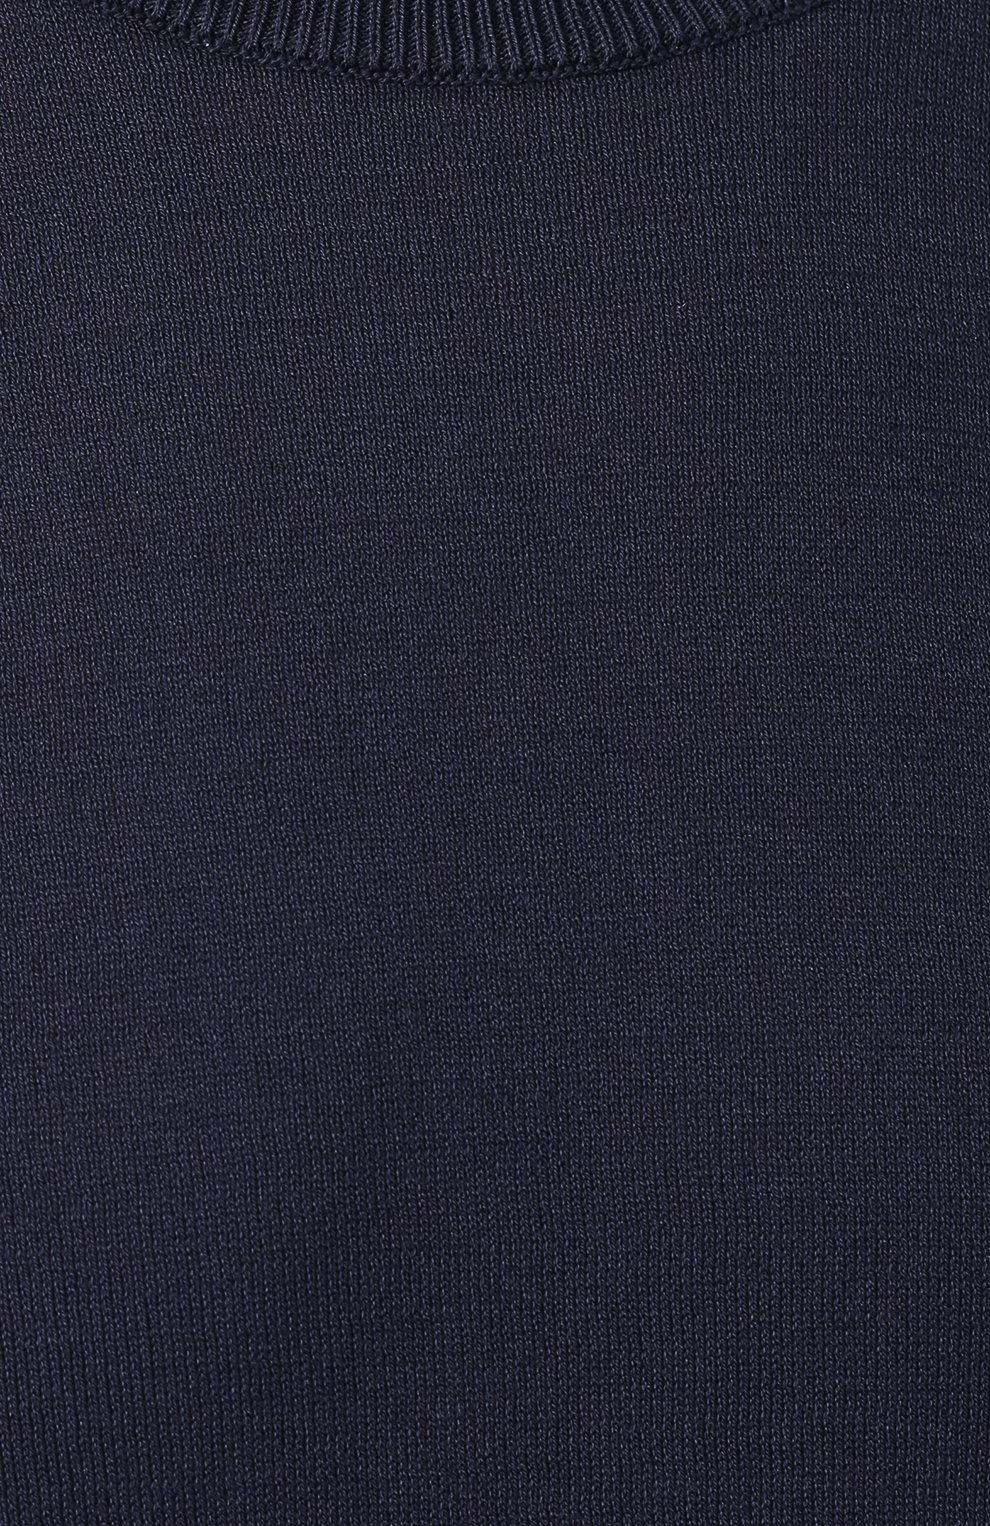 Мужской темно-синий хлопковый джемпер DANIELE FIESOLI купить в интернет-магазине ЦУМ, арт. DF 0303